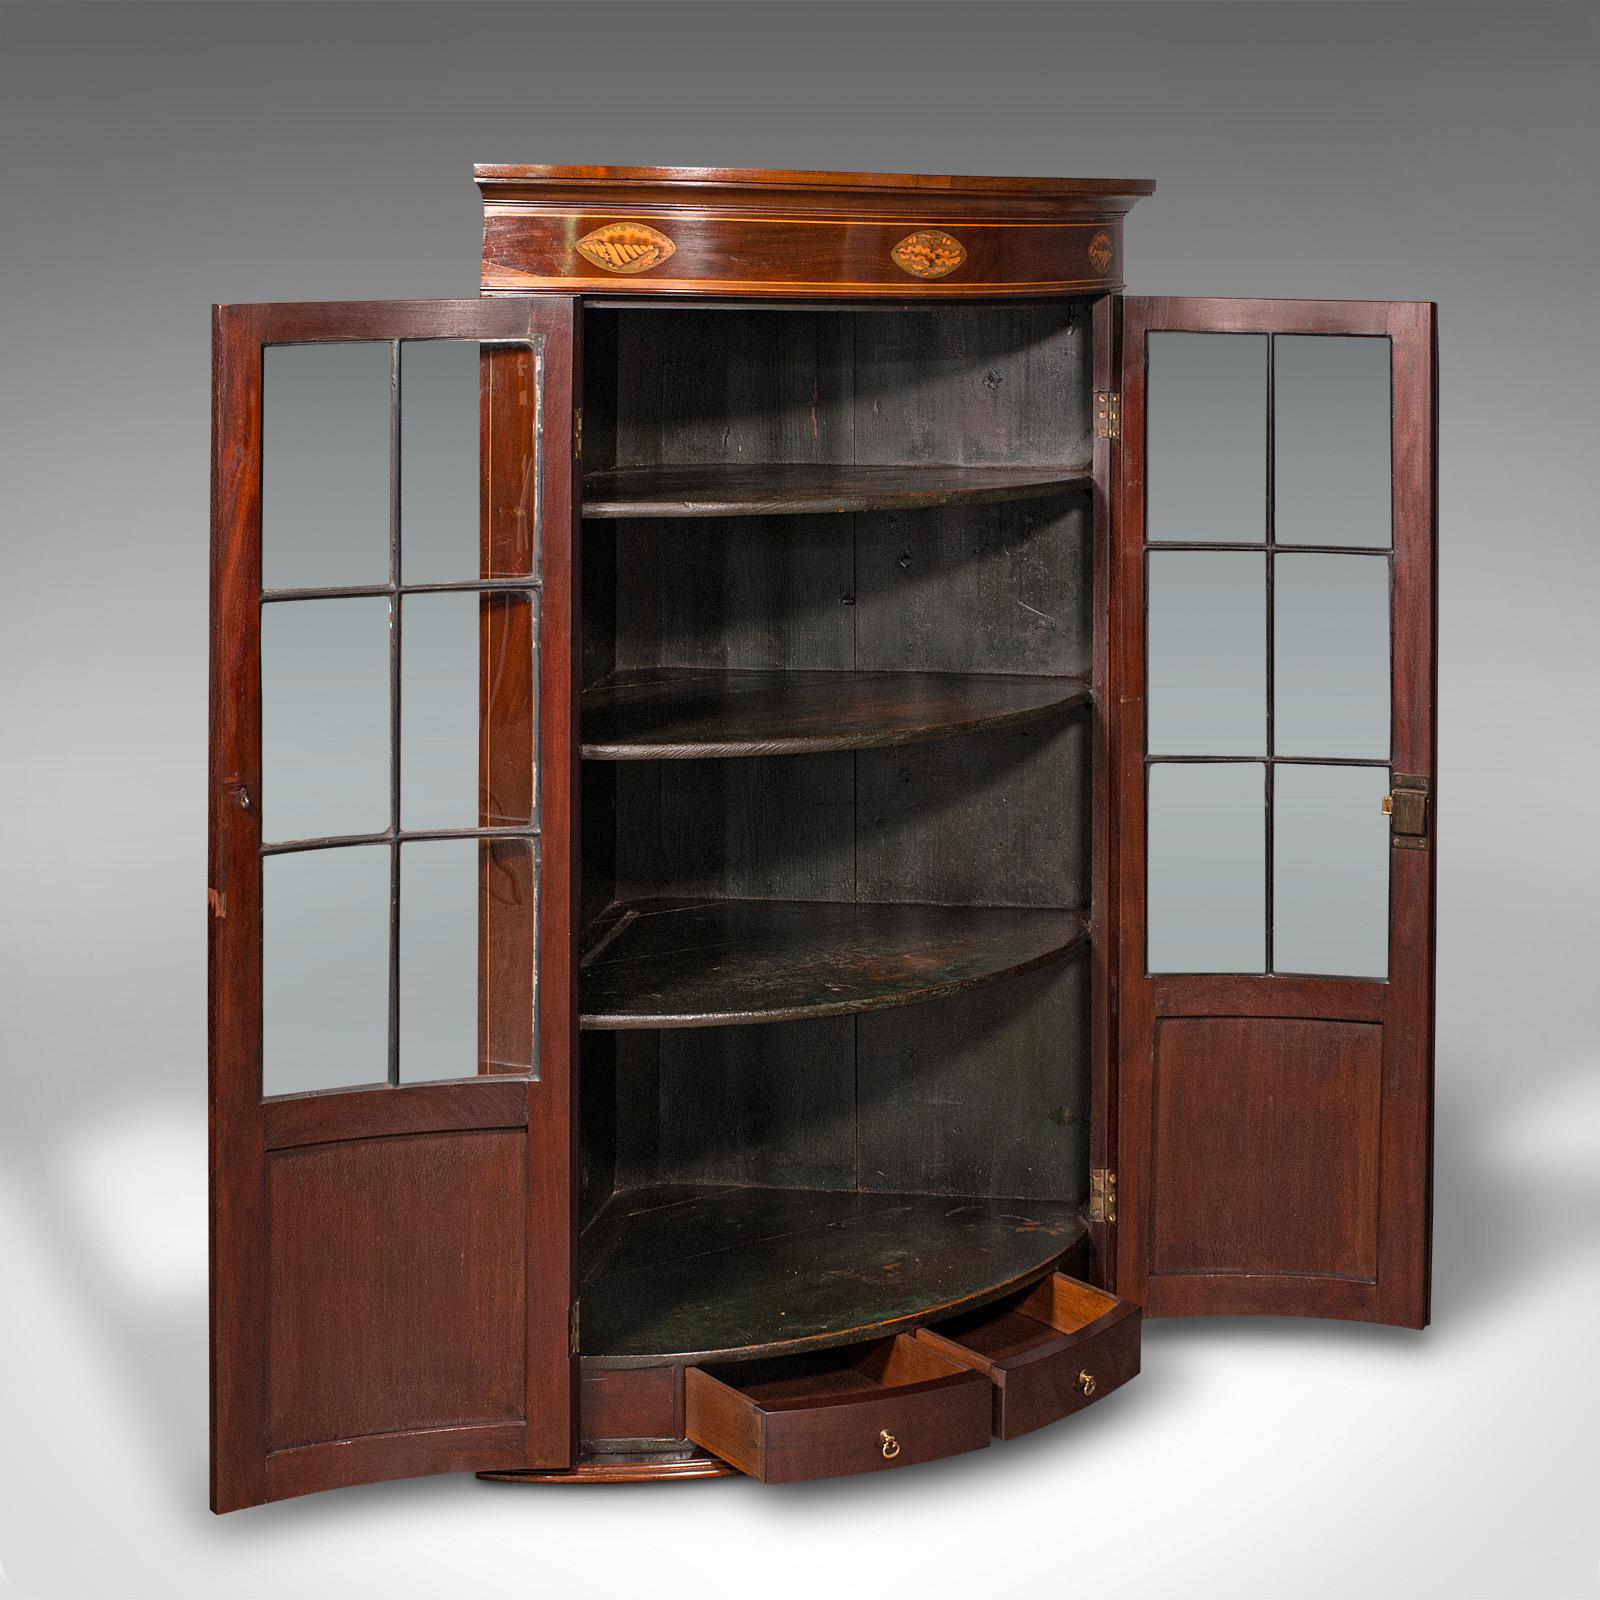 Il s'agit d'un ancien meuble d'angle vitré. Une armoire anglaise en acajou et verre, datant de la période géorgienne, vers 1800.

Armoires remarquables avec de délicieux vitrages et des détails incrustés
Présentant une patine d'ancienneté